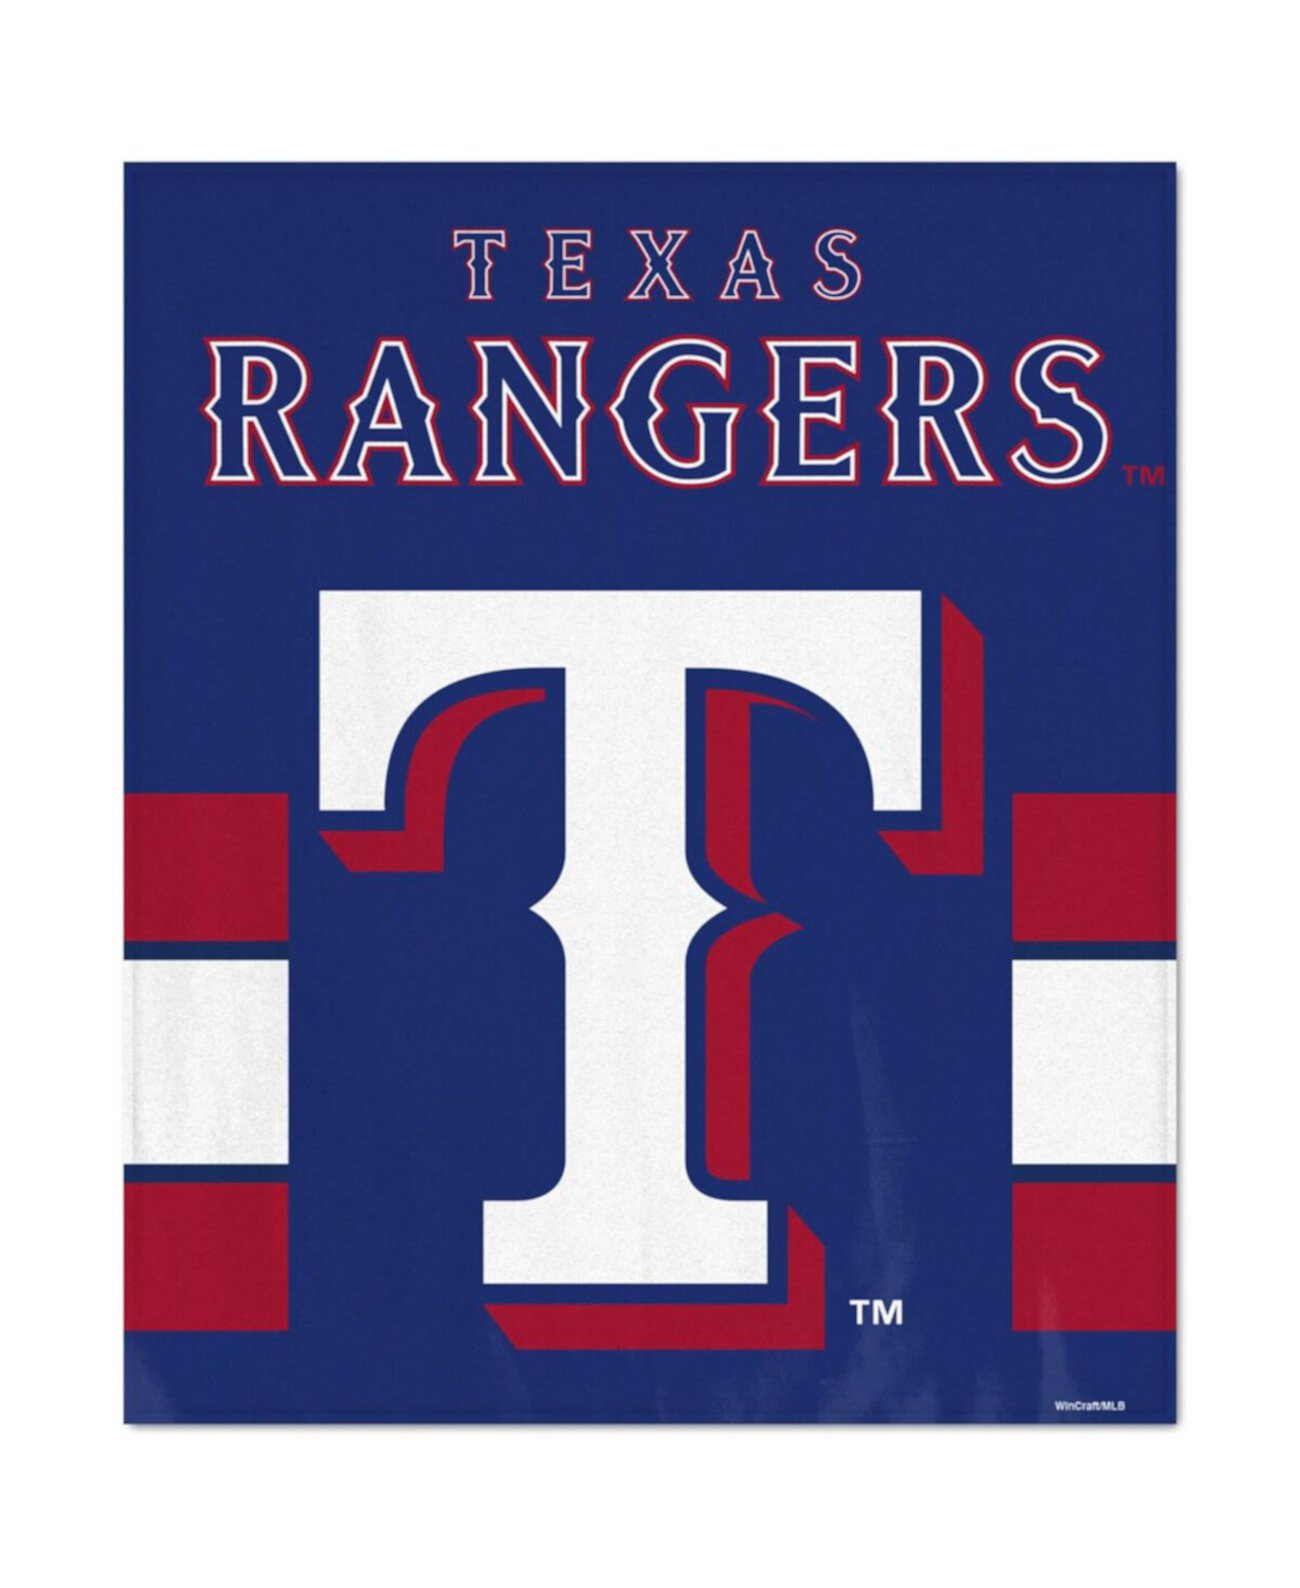 Ультраплюшевое одеяло Texas Rangers размером 50 x 60 дюймов Wincraft